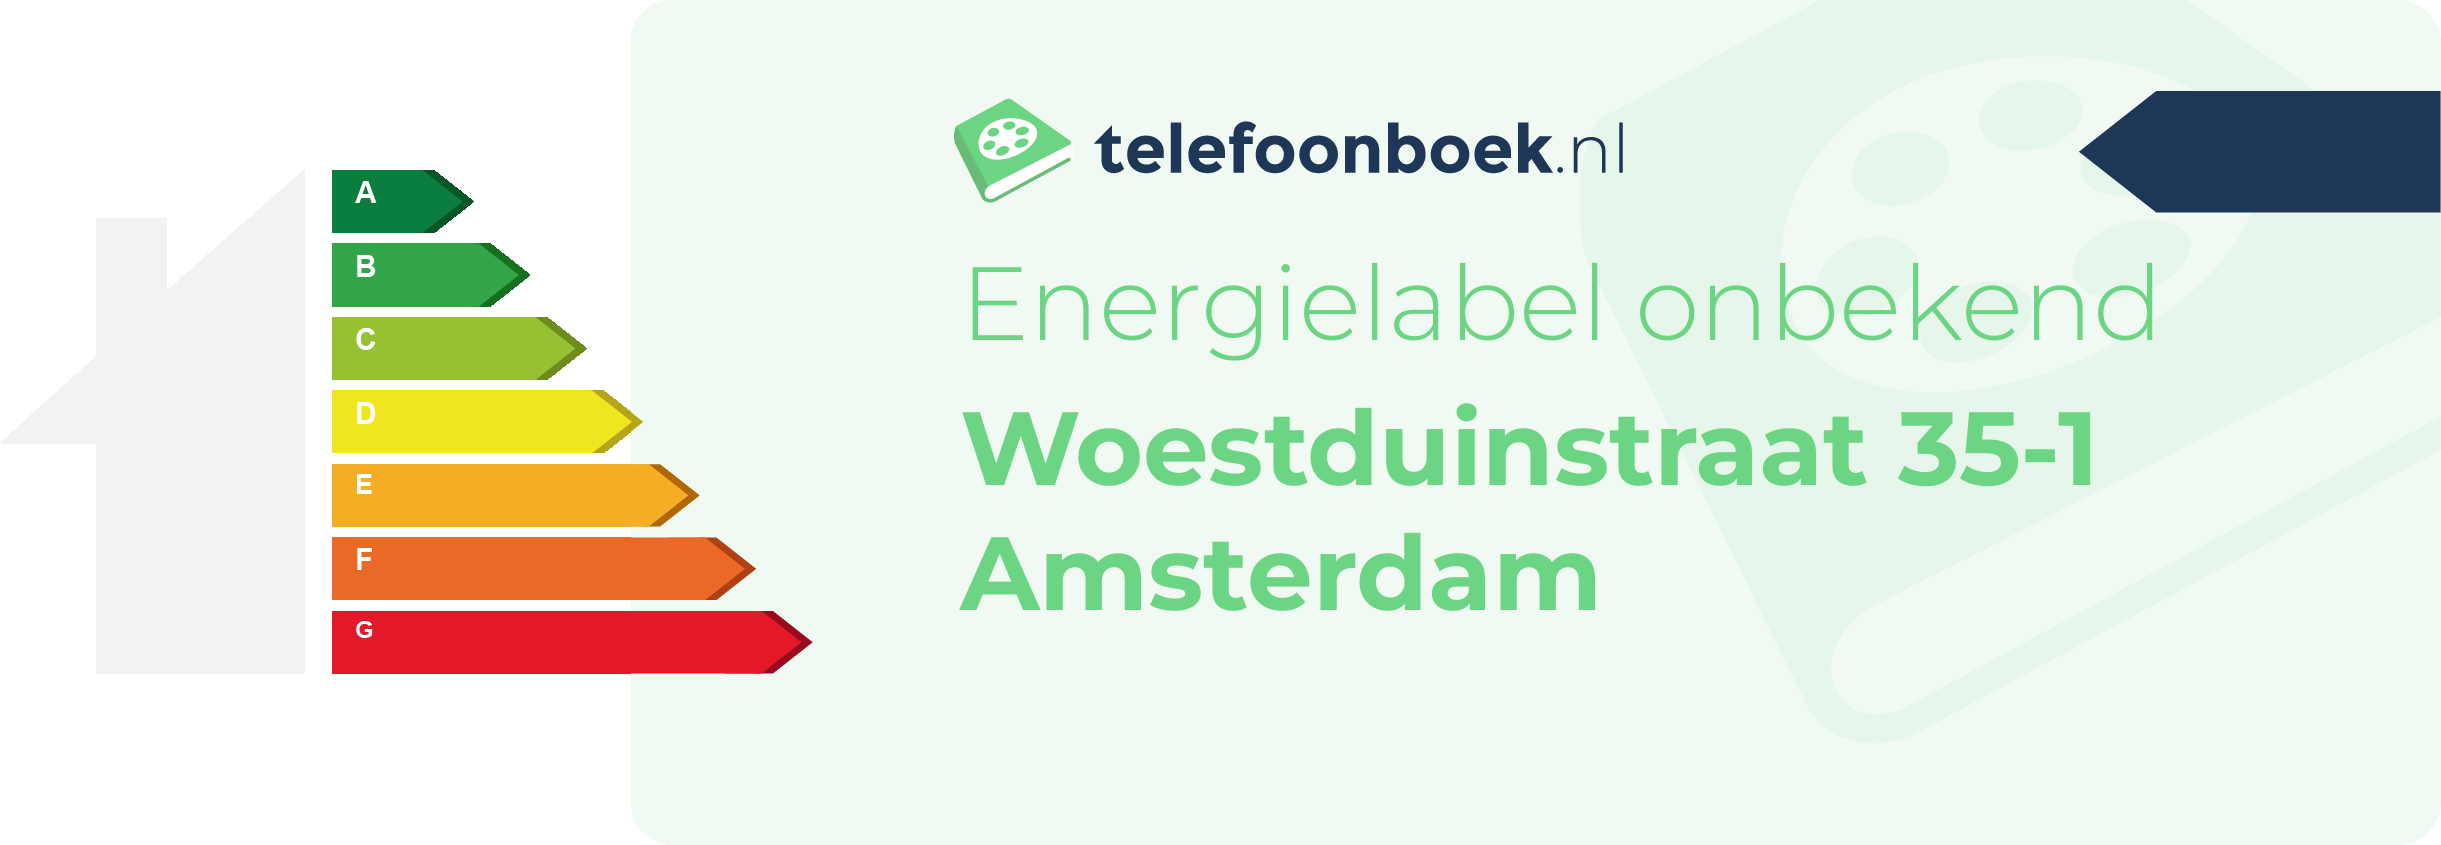 Energielabel Woestduinstraat 35-1 Amsterdam